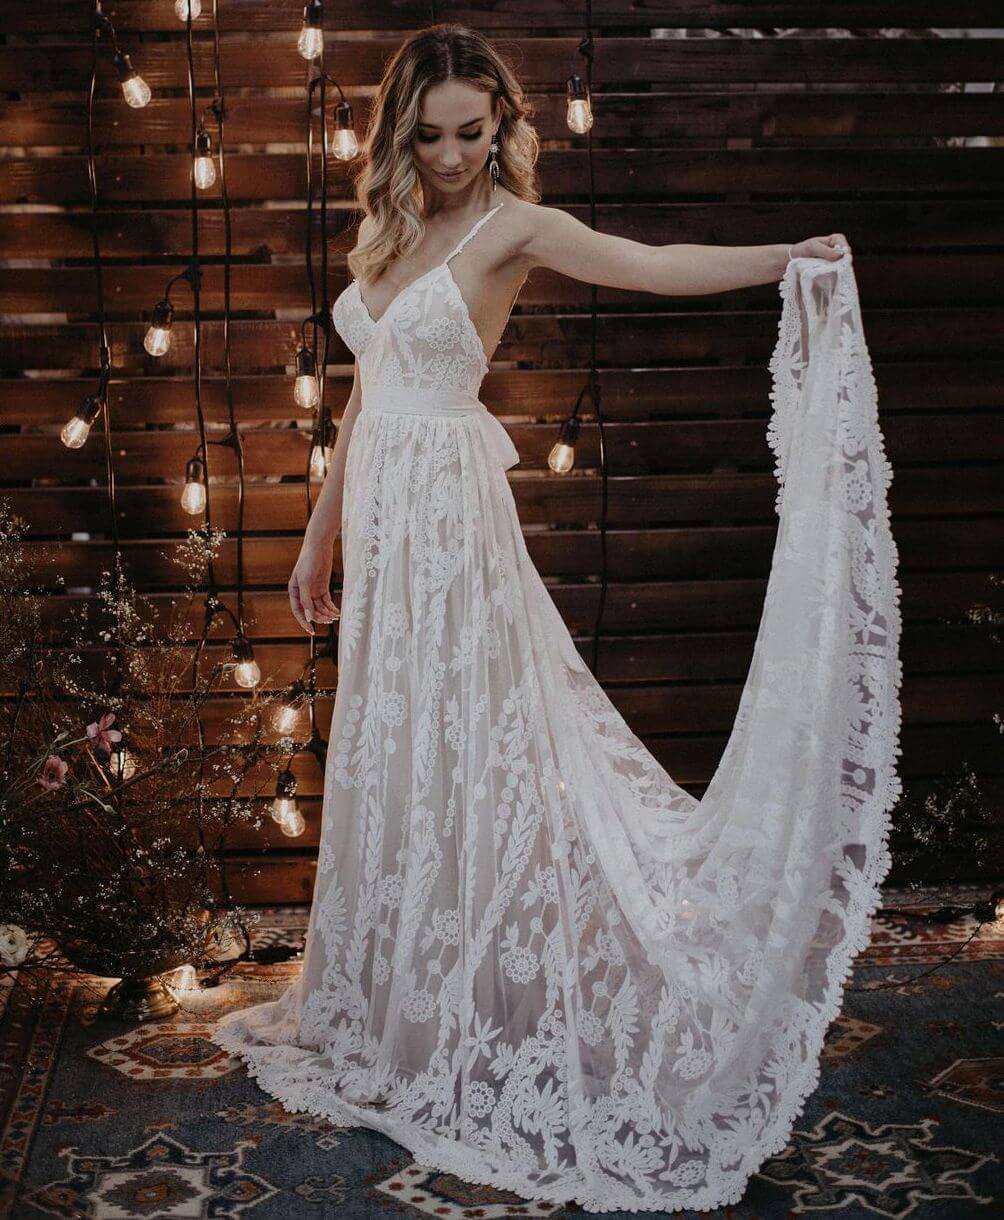 flowy lace wedding dress